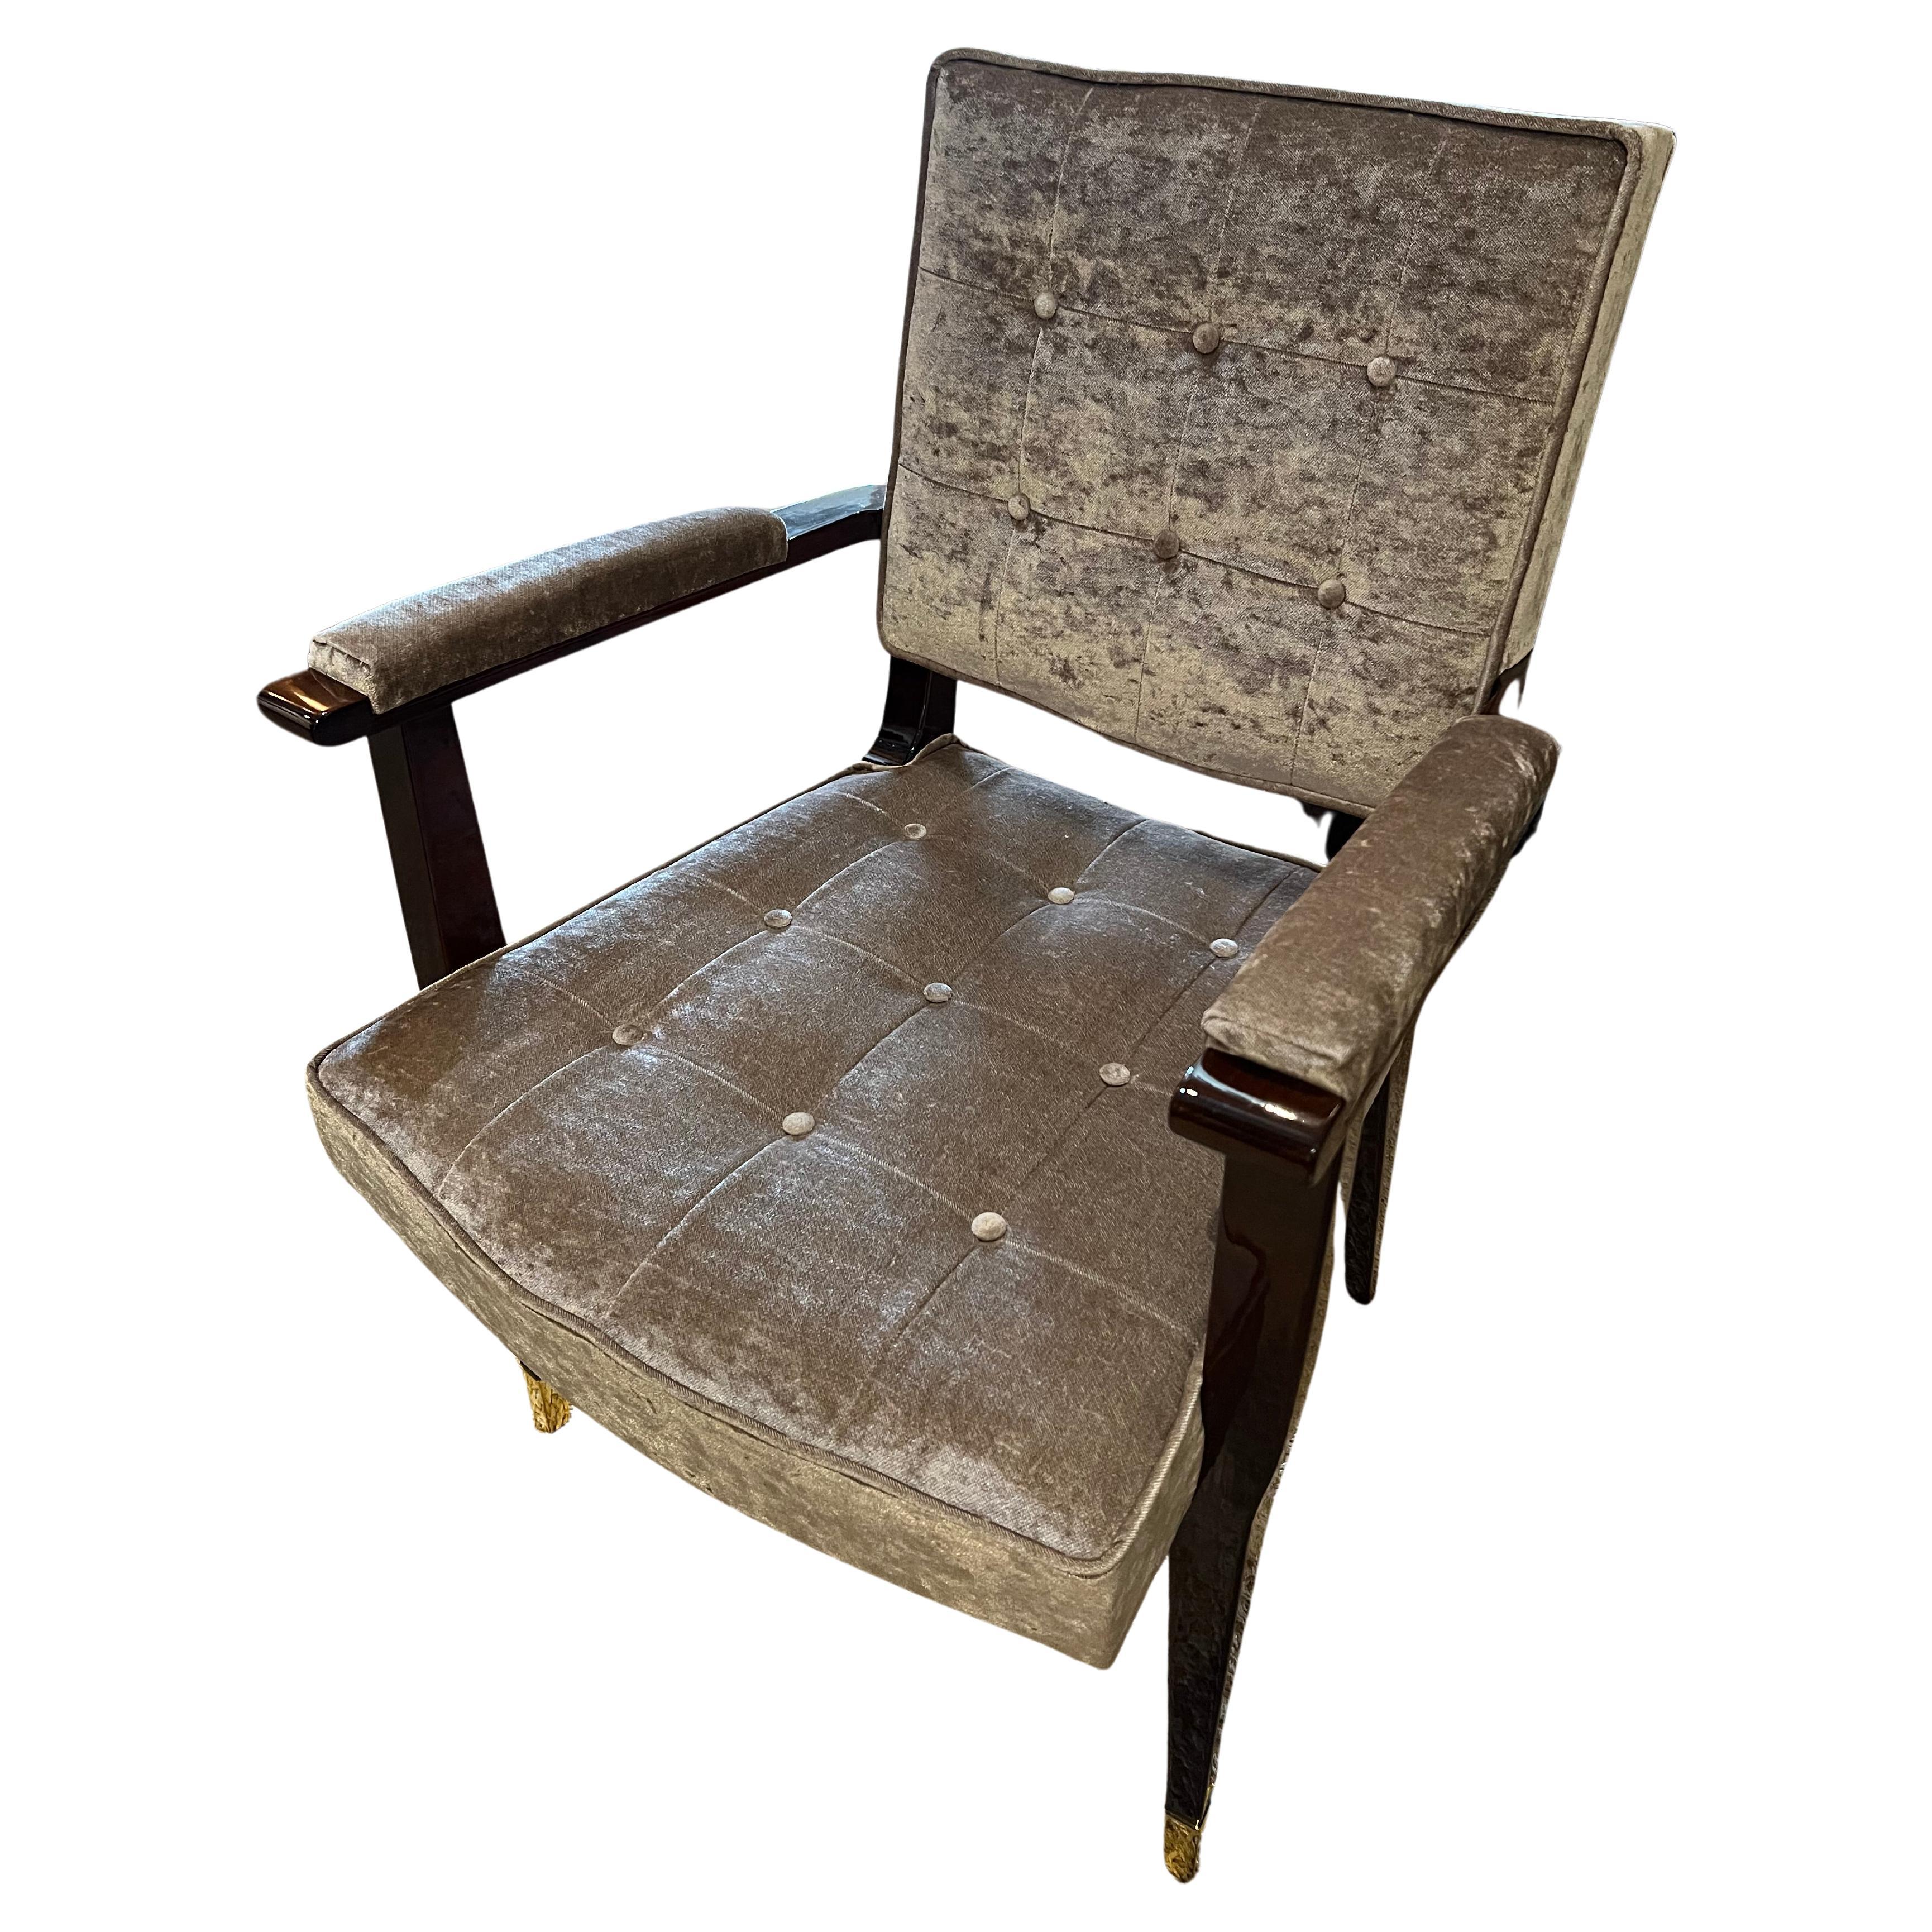 Bequemer und geräumiger französischer Art Deco Stuhl aus Nussbaumholz. Neu gepolstert mit hellbeigem, samtigem Stoff. Der Stuhl wird von 4 länglichen Beinen getragen, die Spitzen von 2 Vorderbeinen sind mit dekorativen Elementen aus Messing umhüllt.